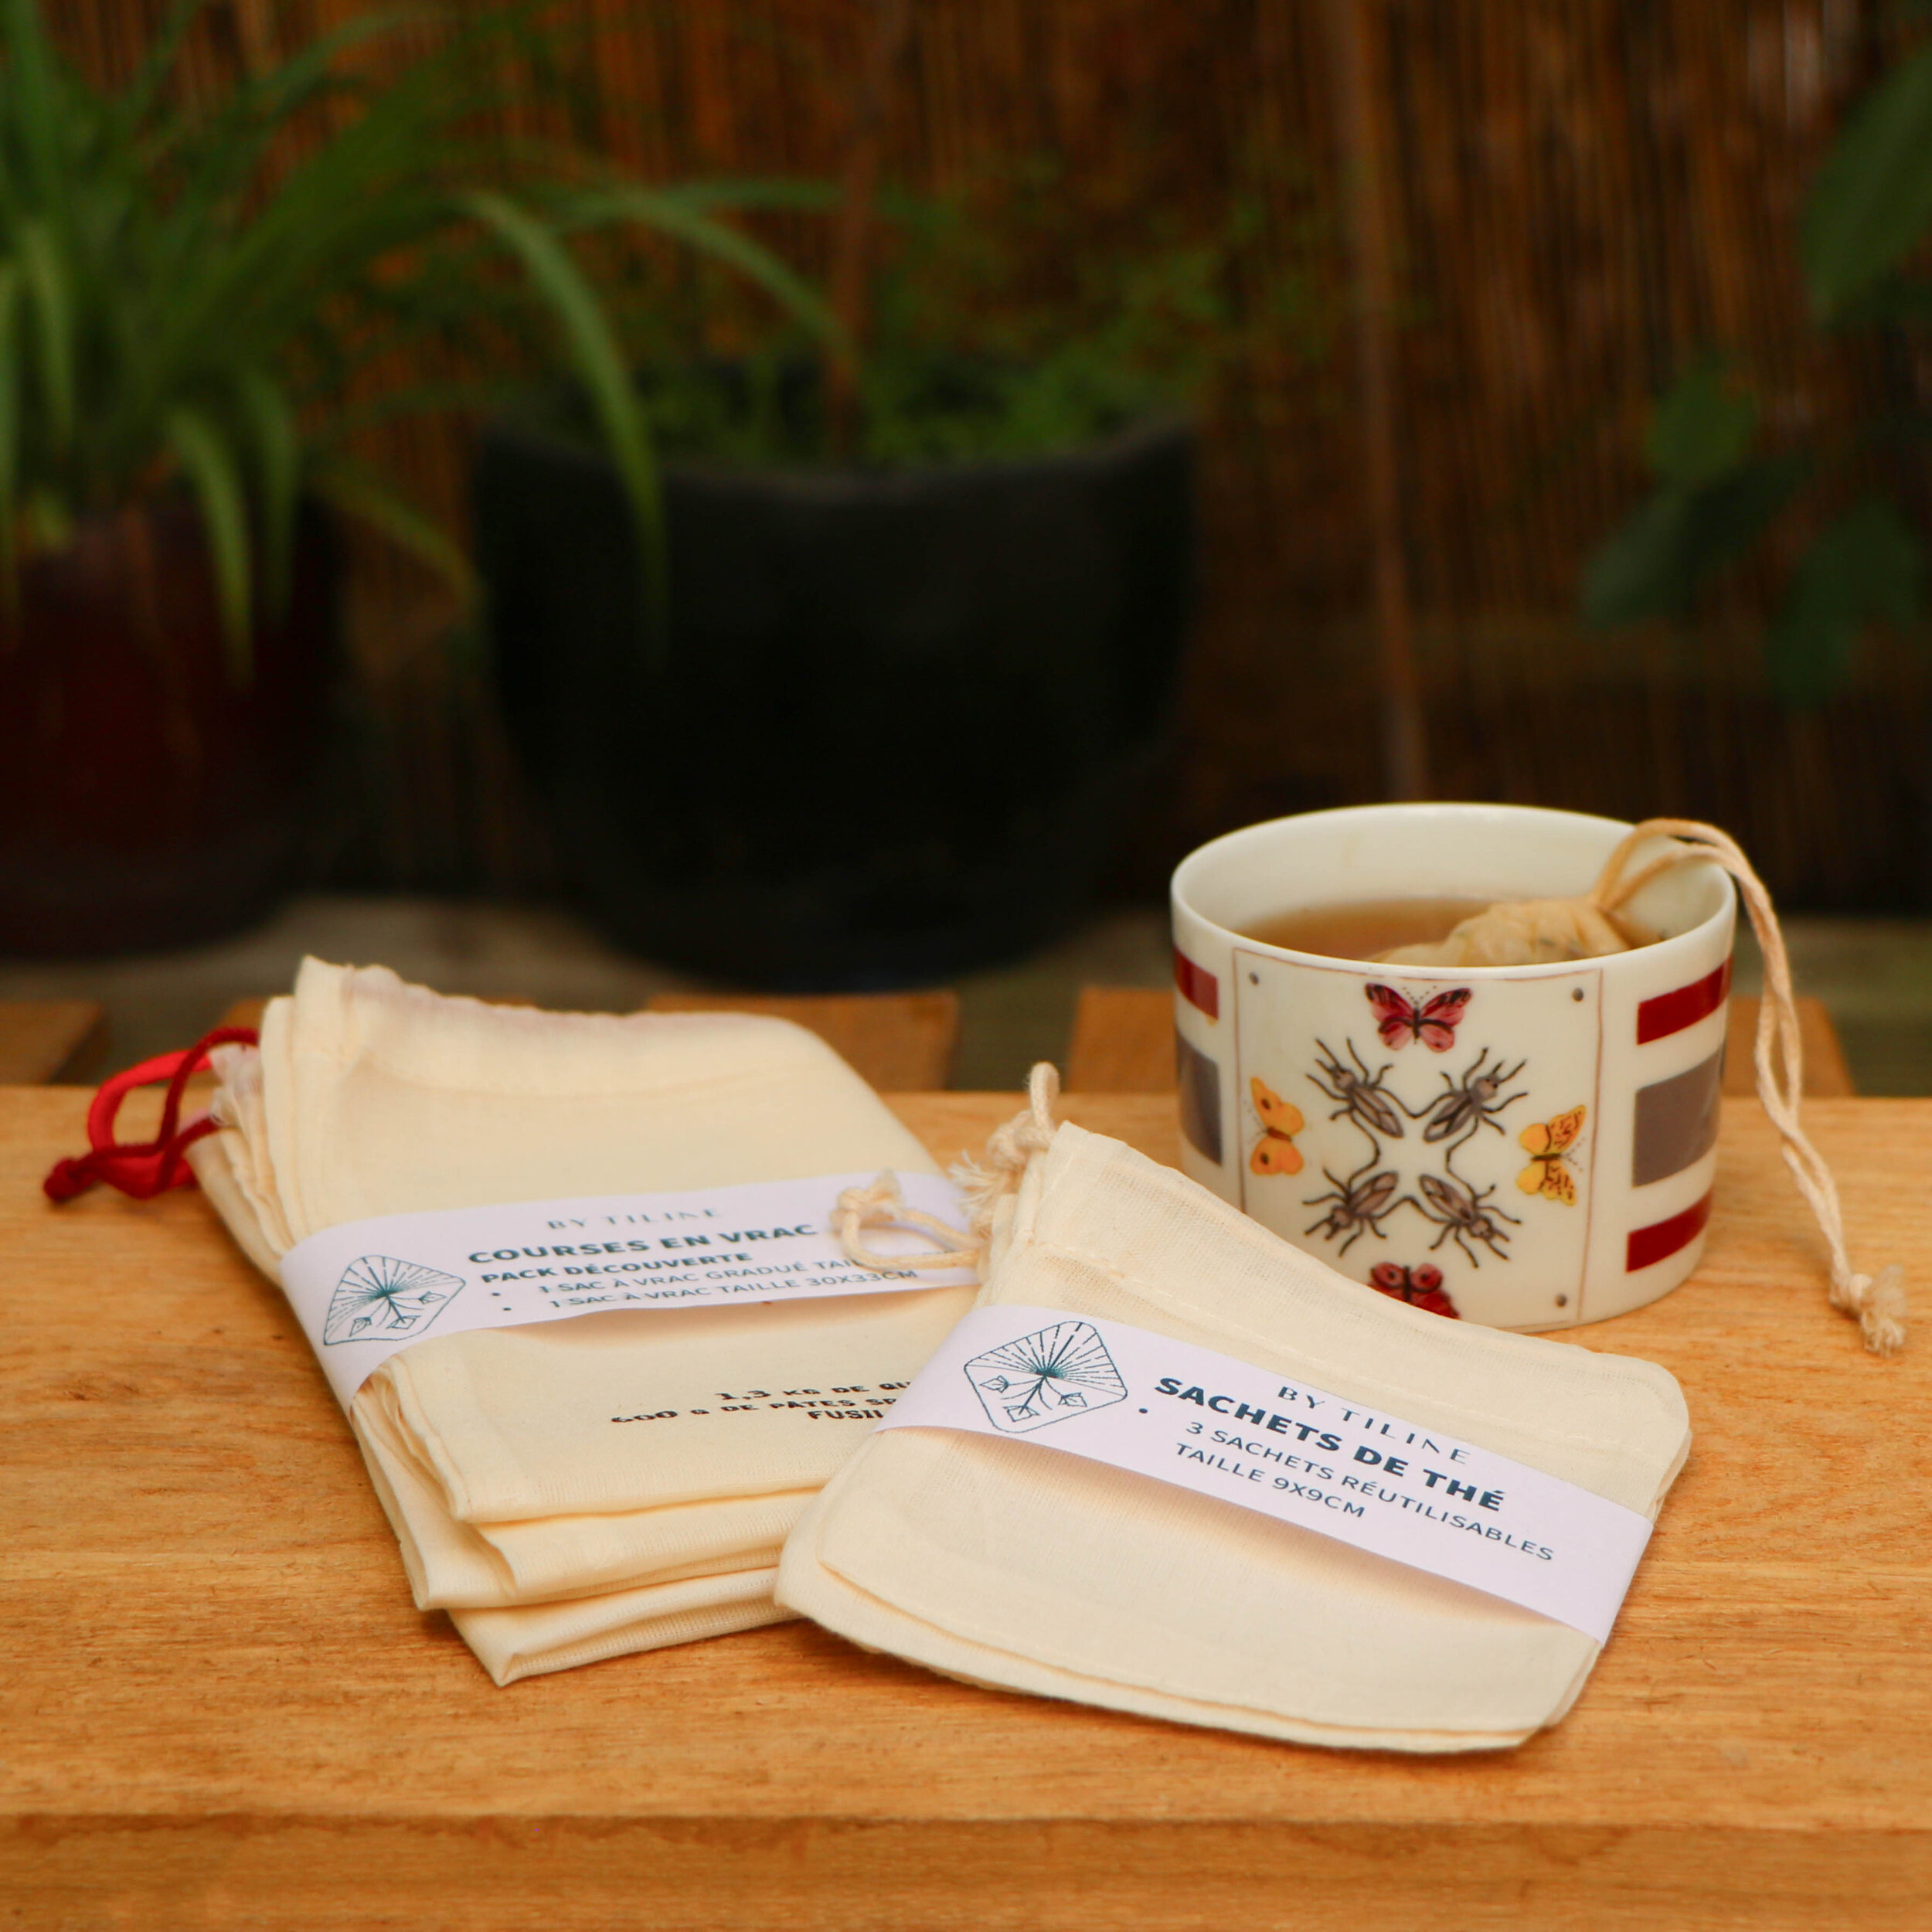 Sachet de thé lavable & réutilisable en tissu - Solide !